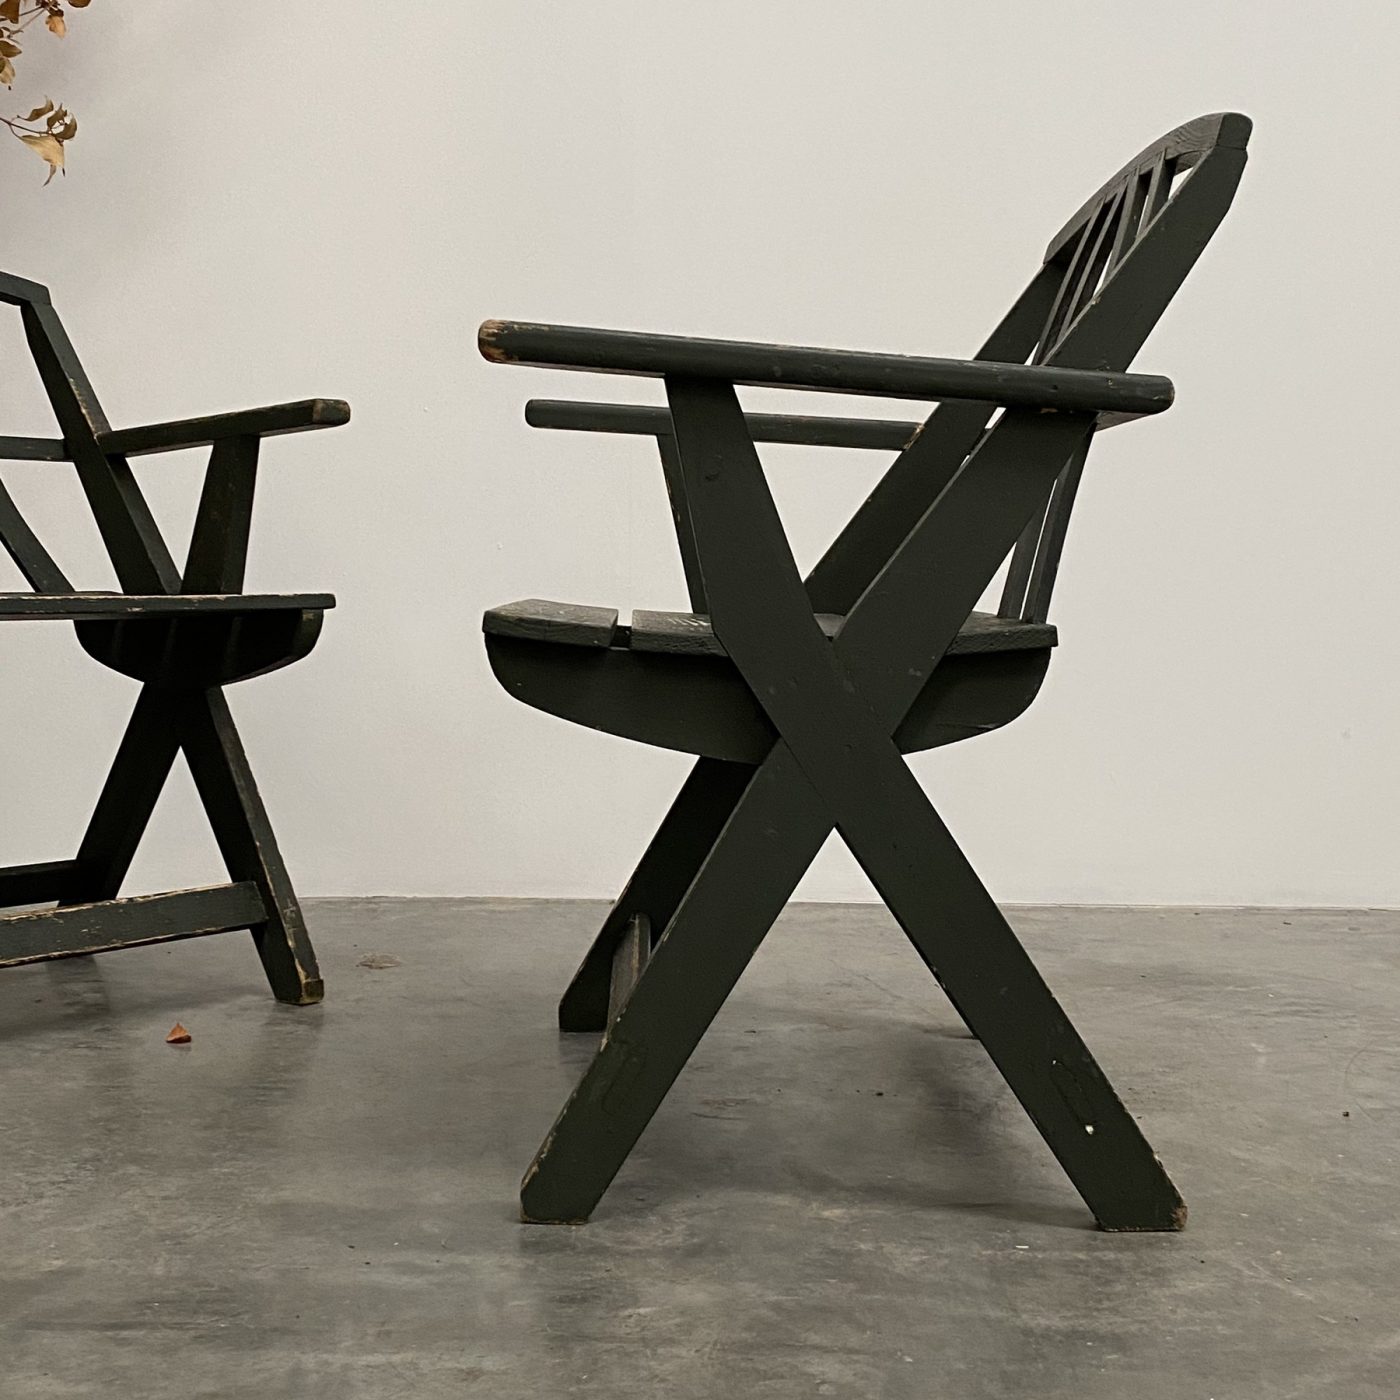 objet-vagabond-wooden-chairs0001